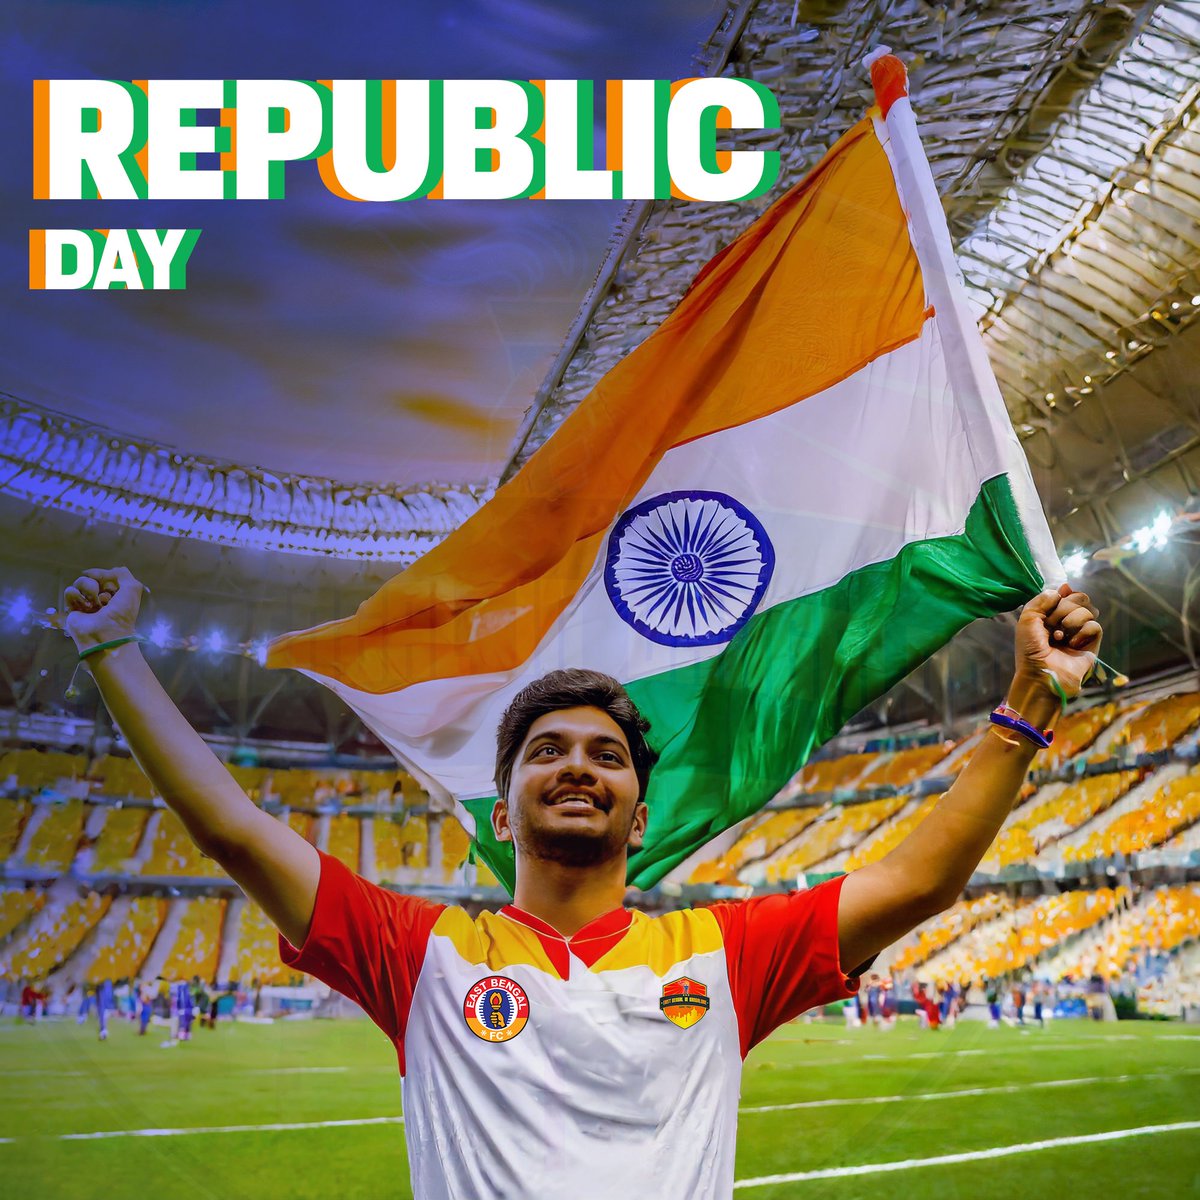 Wishing you a joyful Republic Day! 🇮🇳